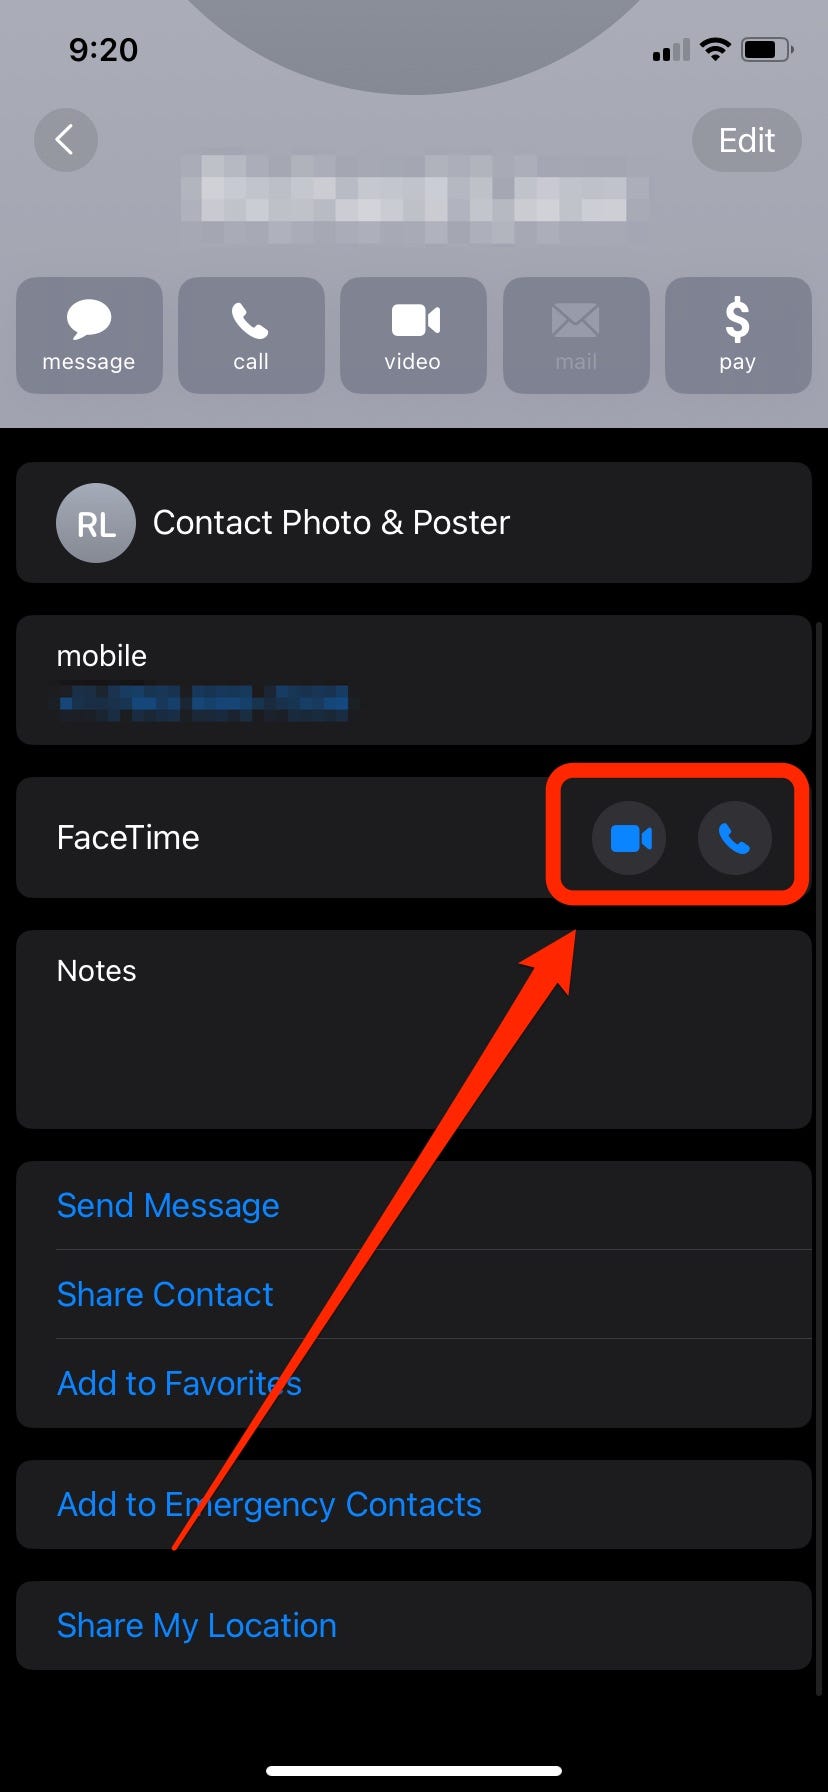 Ein Screenshot von einem iPhone zeigt einen roten Pfeil, der auf zwei Schaltflächen in einer Kontaktkarte zeigt: Das Videosymbol startet einen Video-FaceTime-Anruf und das Telefonsymbol startet einen reinen Audio-FaceTime-Anruf.